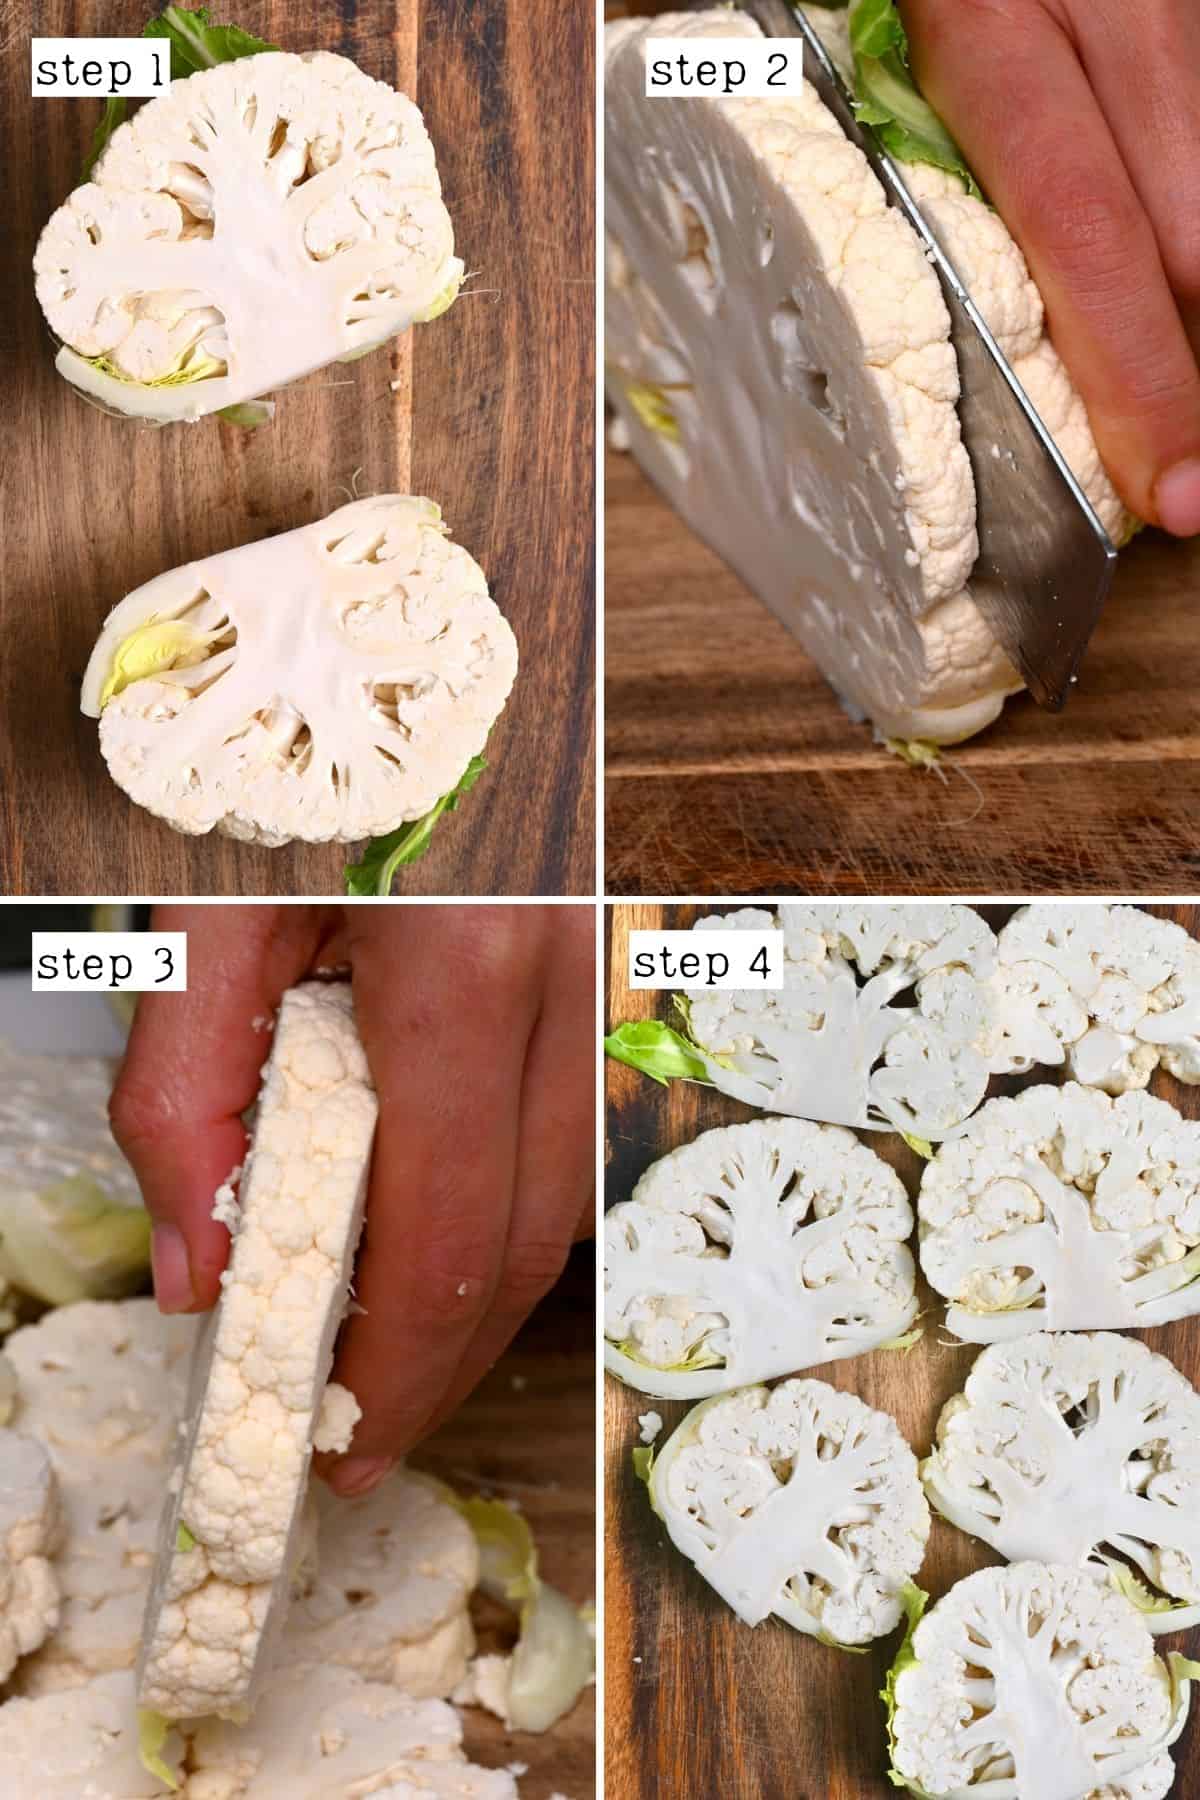 Steps for cutting cauliflower